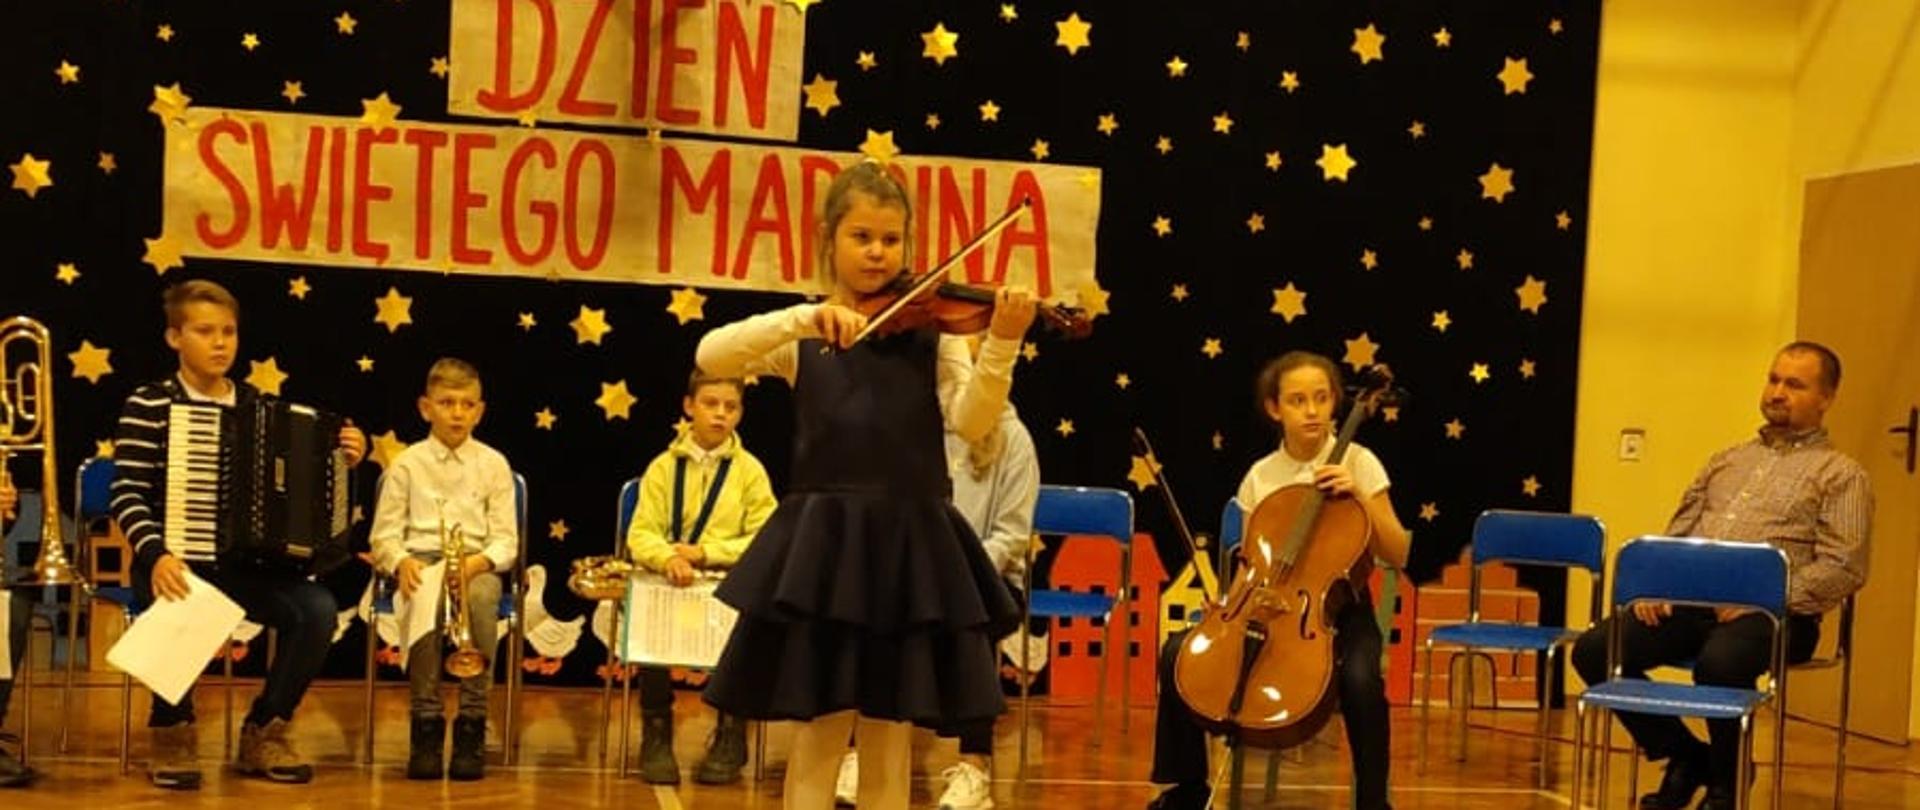 Zdjęcie przedstawia występ uczennicy grającej na skrzypcach oraz słuchających jej innych osób